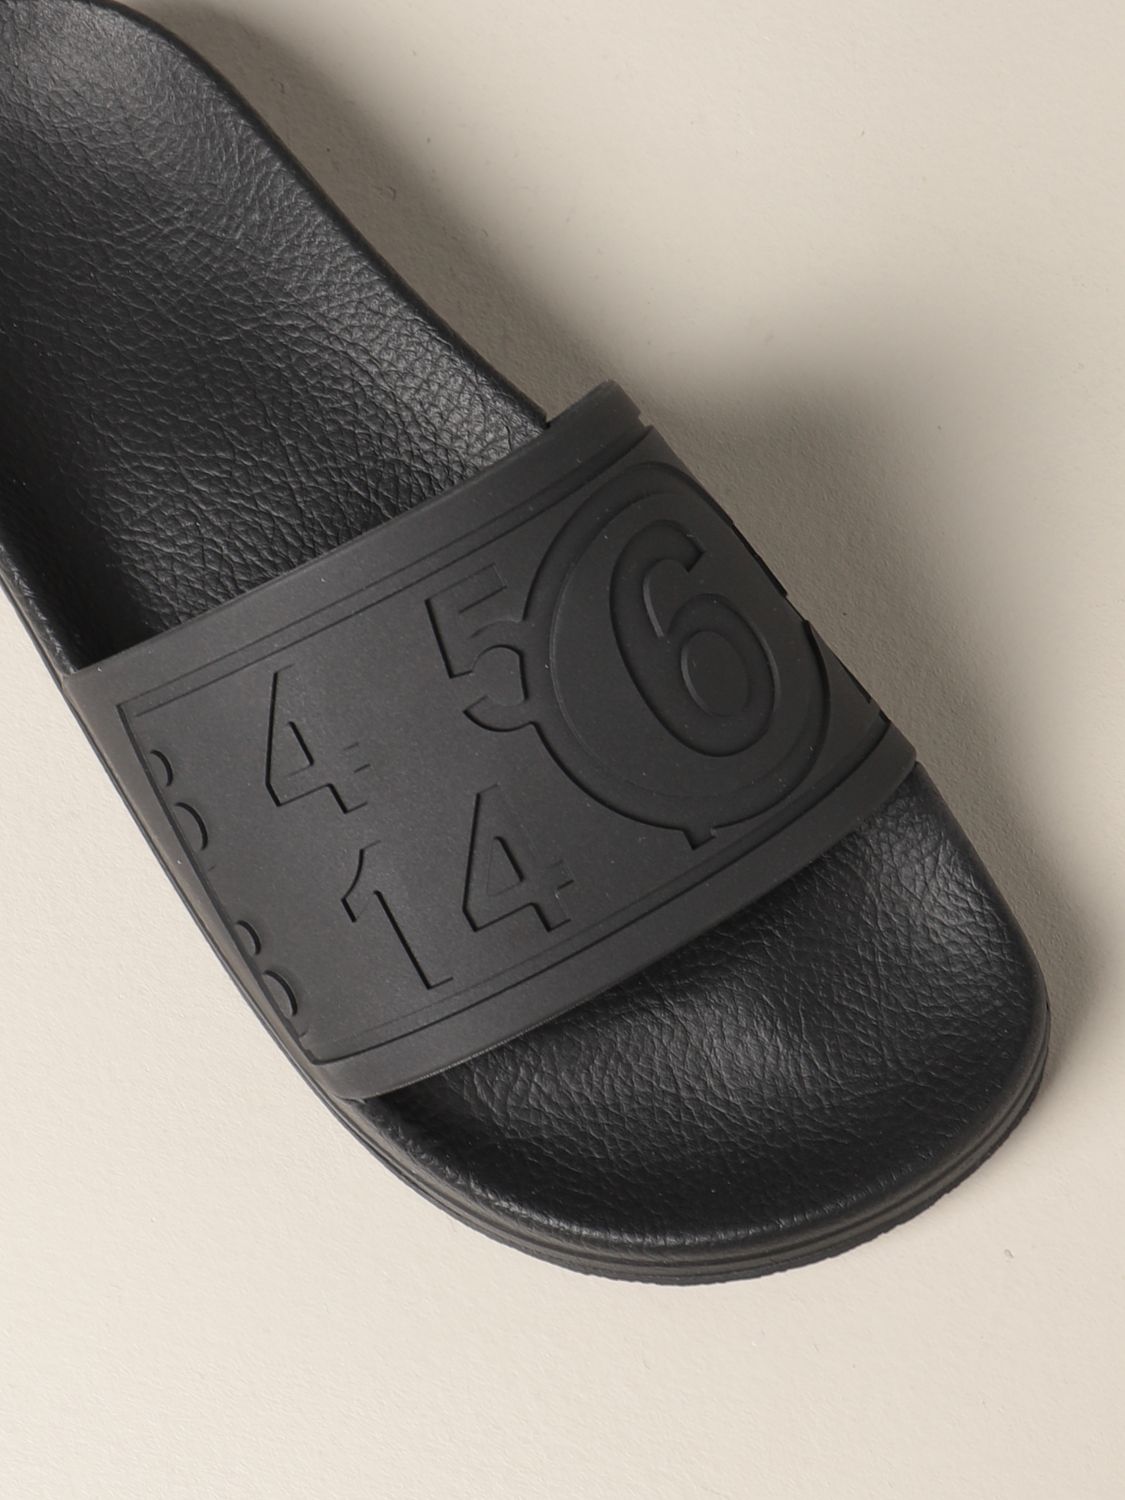 Sandales plates Mm6 Maison Margiela: Chaussures femme Mm6 Maison Margiela noir 4